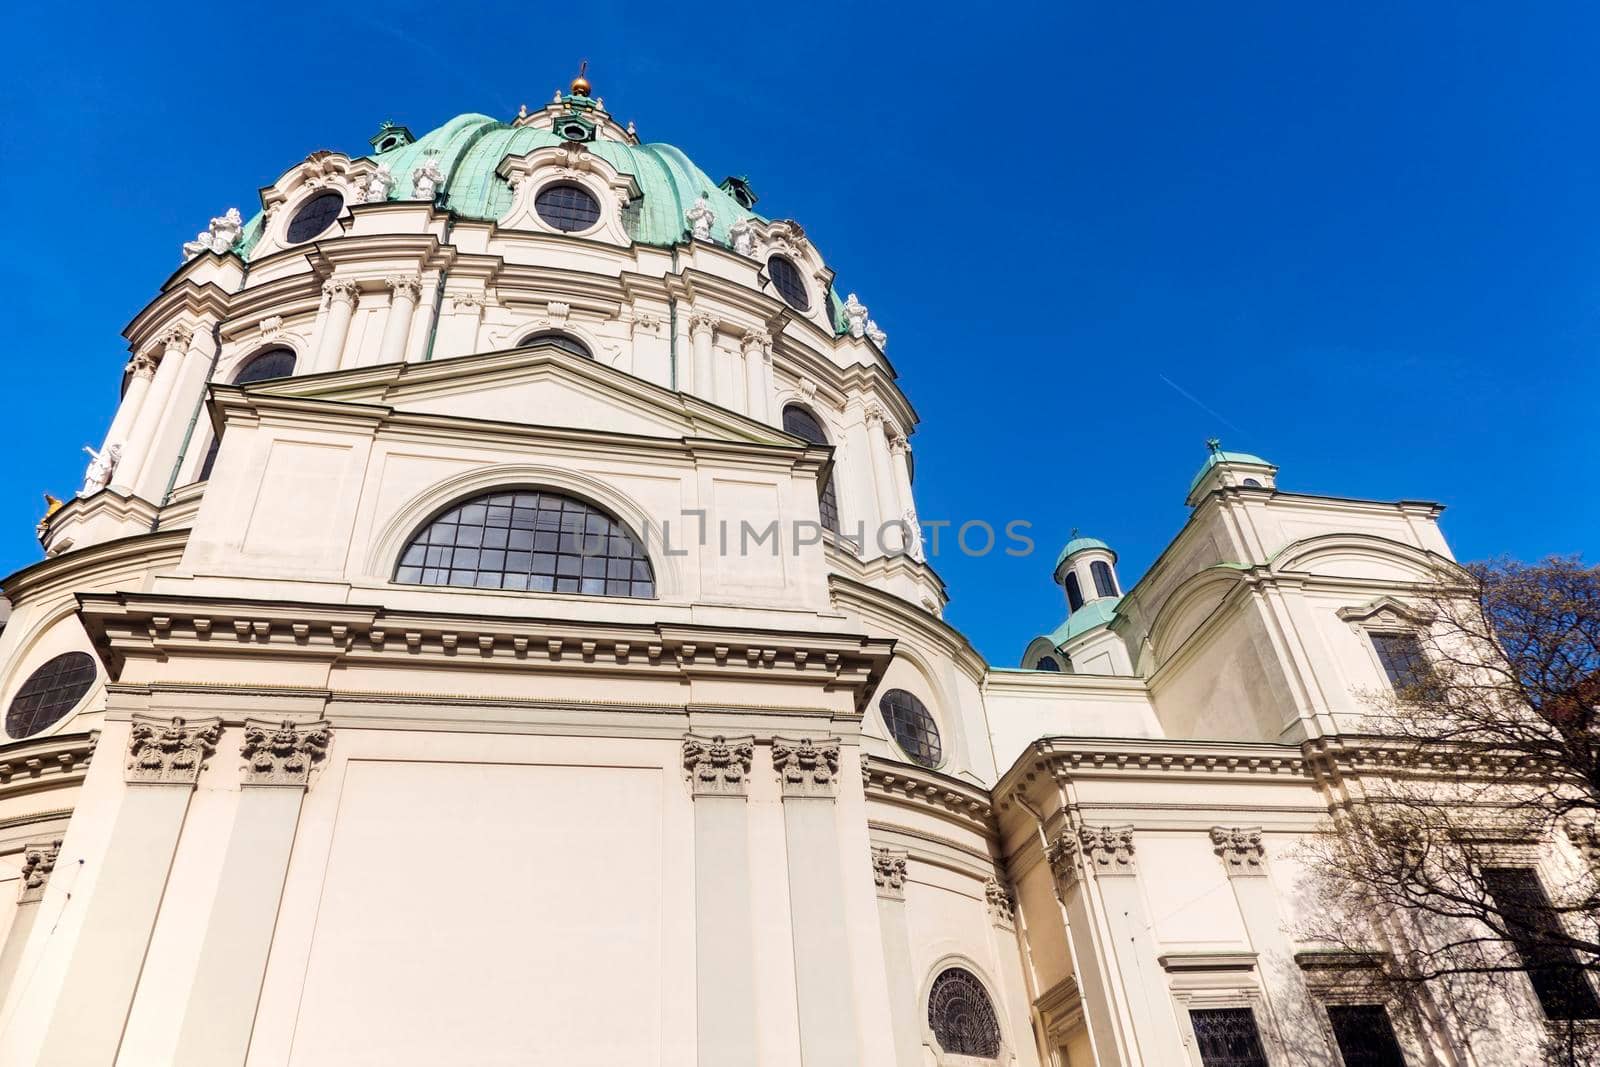 St. Charles's Church in Vienna. Vienna, Austria.